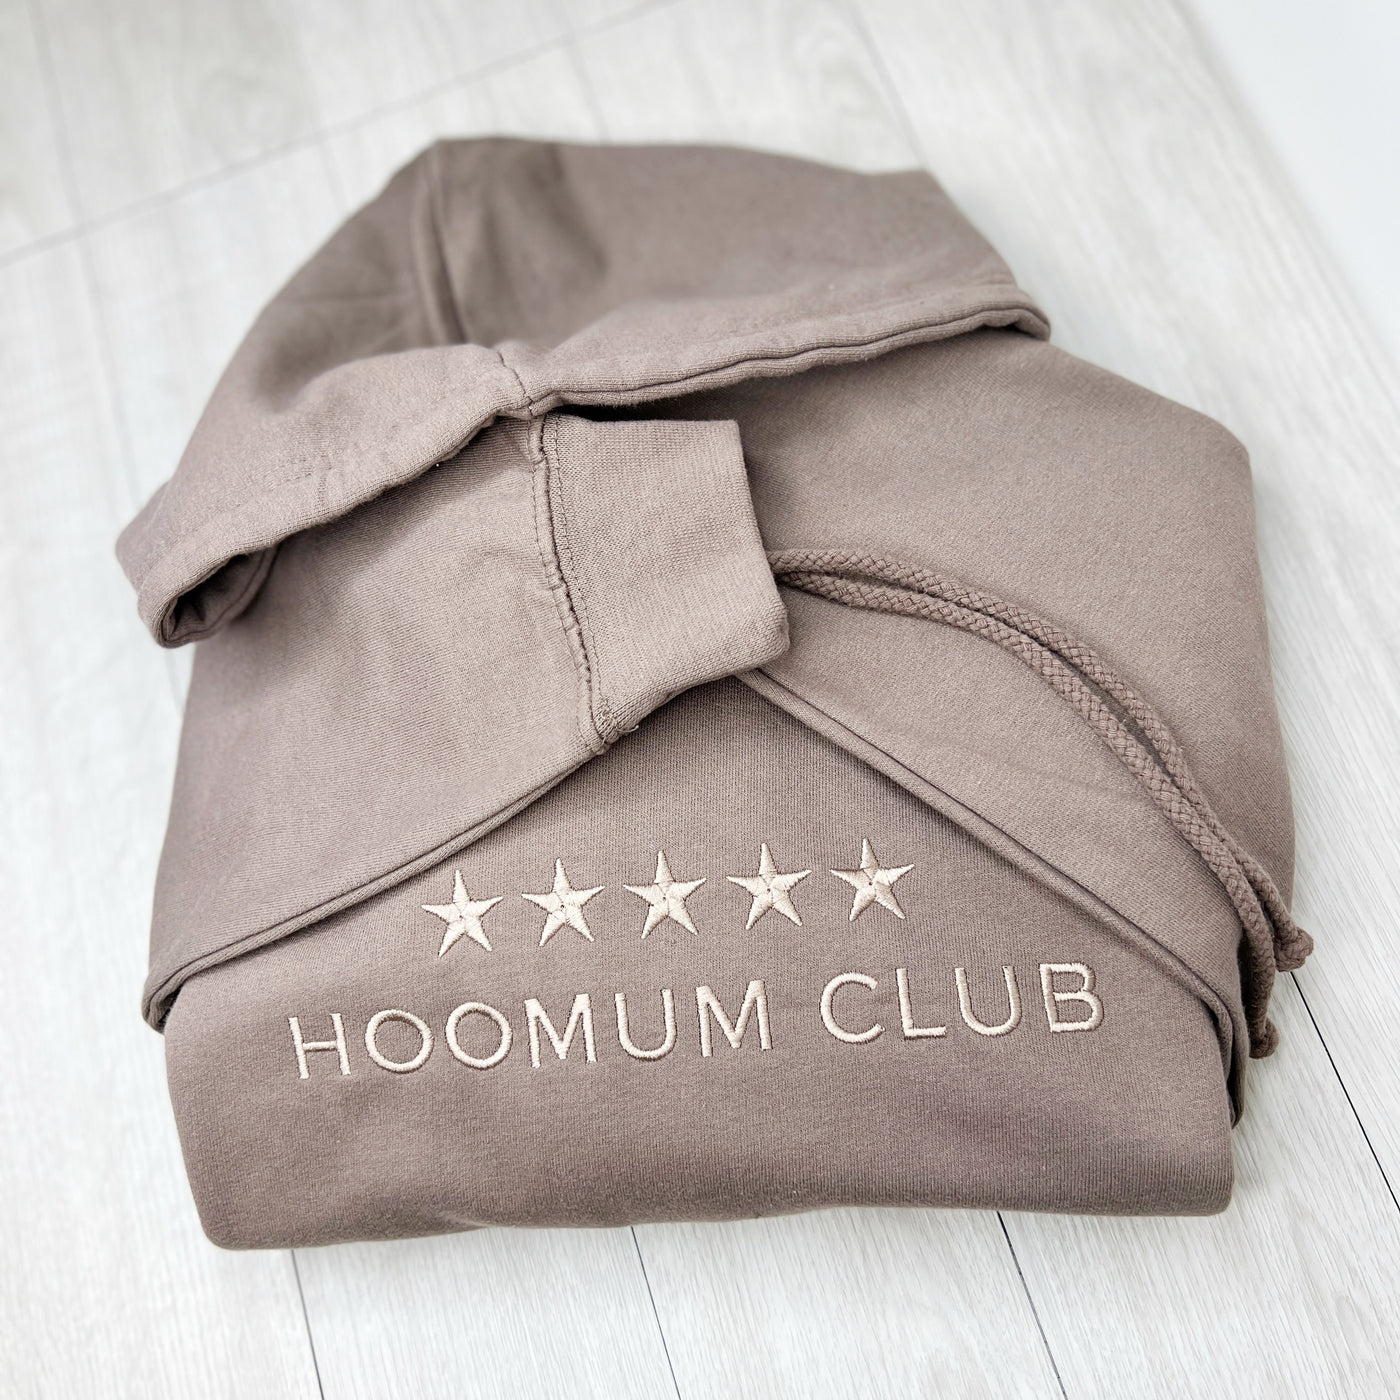 NEW 5* Hoomum Club Hoodies